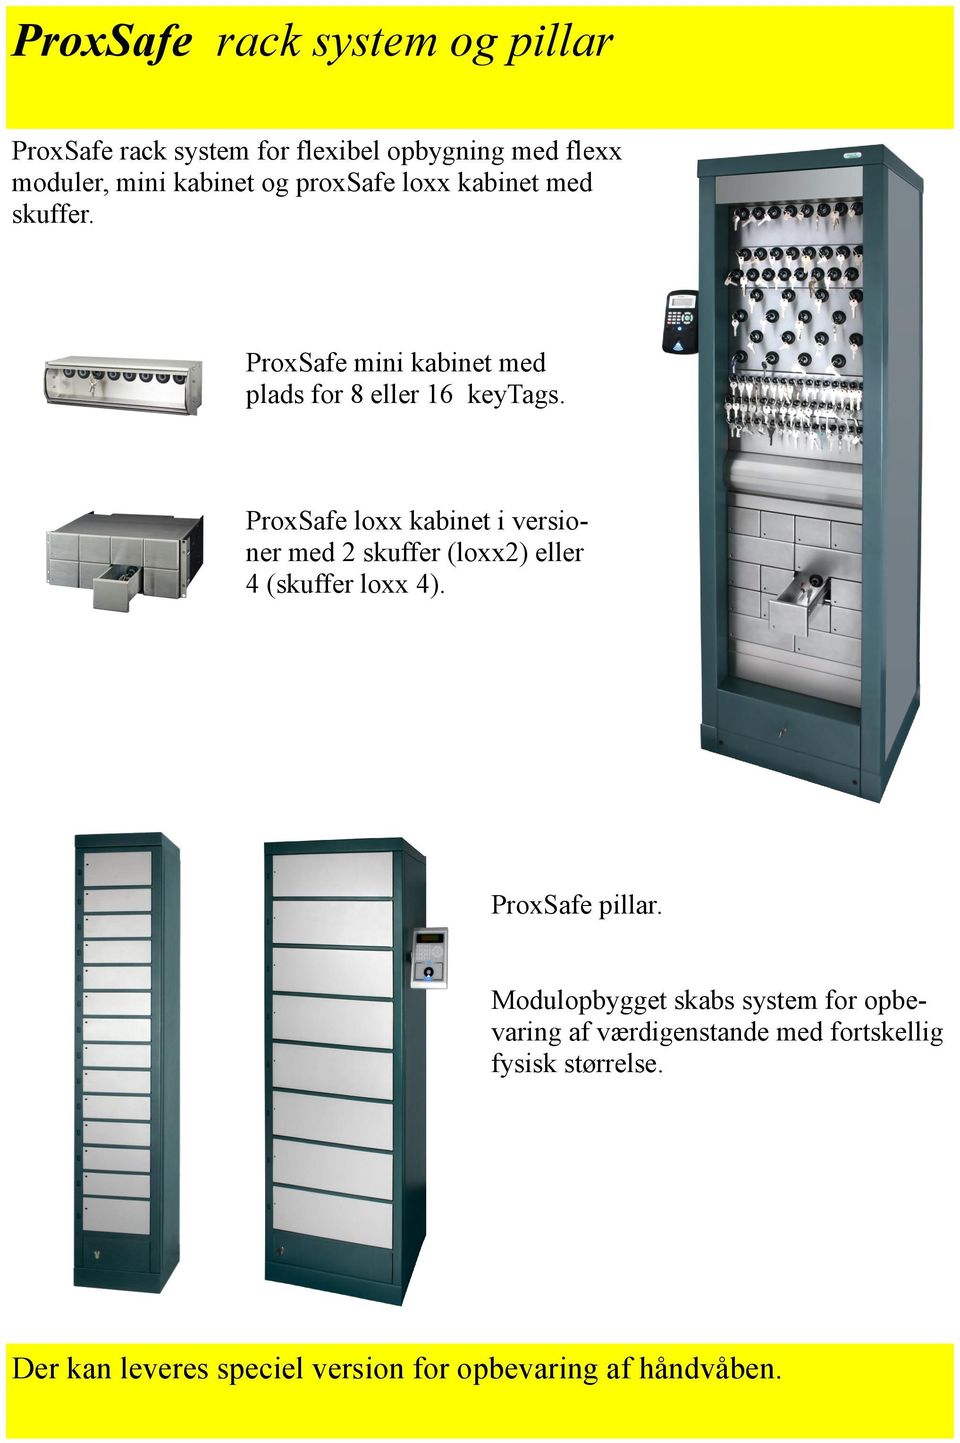 ProxSafe loxx kabinet i versioner med 2 skuffer (loxx2) eller 4 (skuffer loxx 4). ProxSafe pillar.